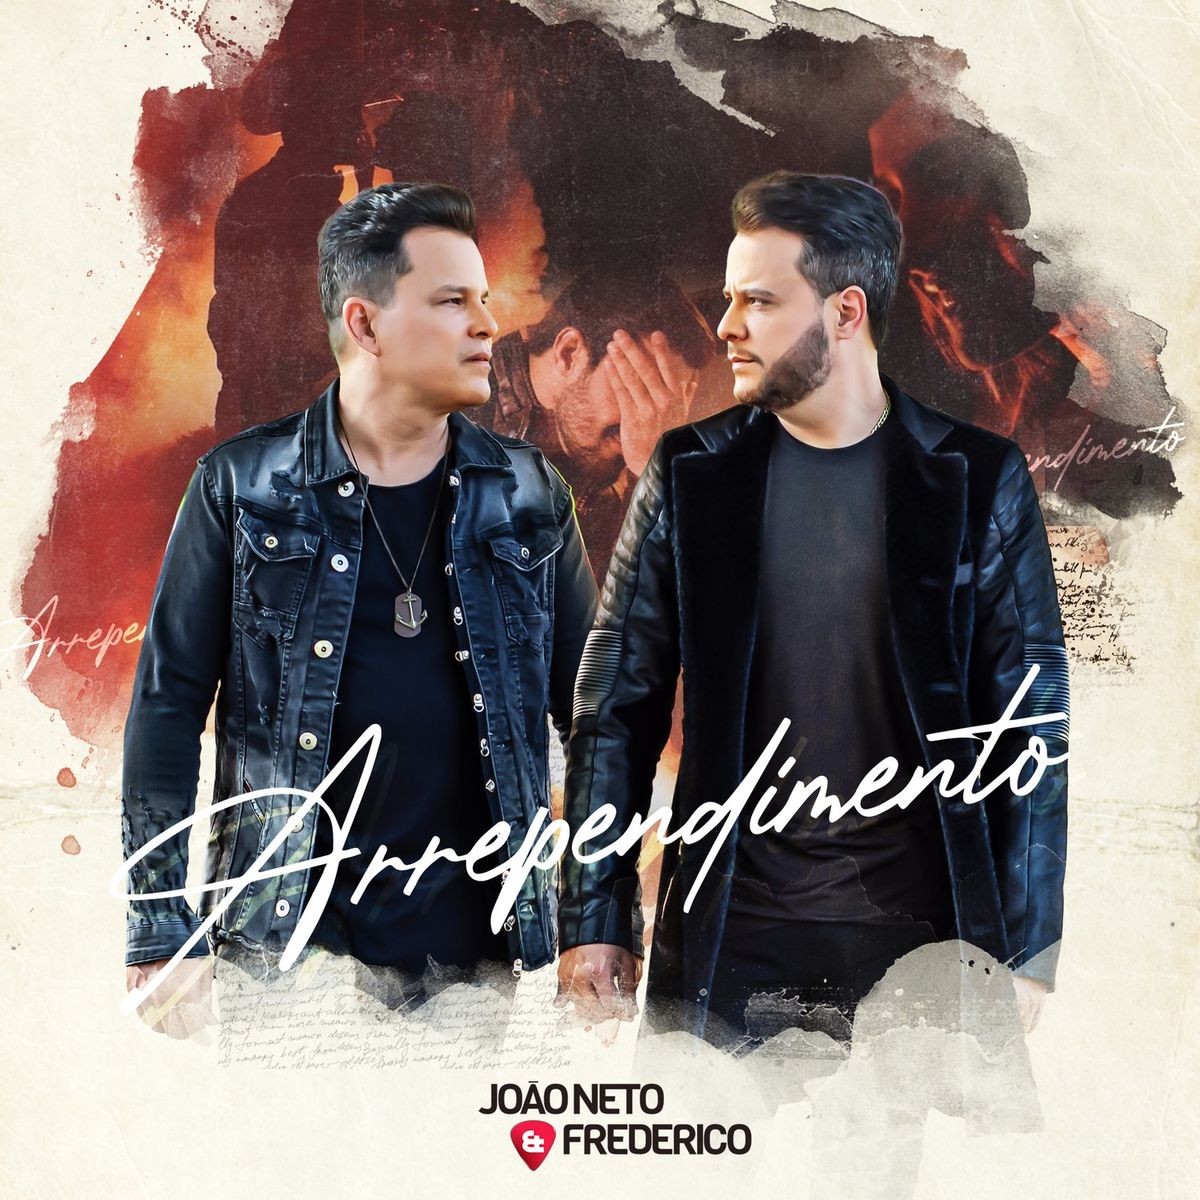 João Neto & Frederico show 'Rependimento' in the duo's first single in 2021 | Mauro Ferreira's blog